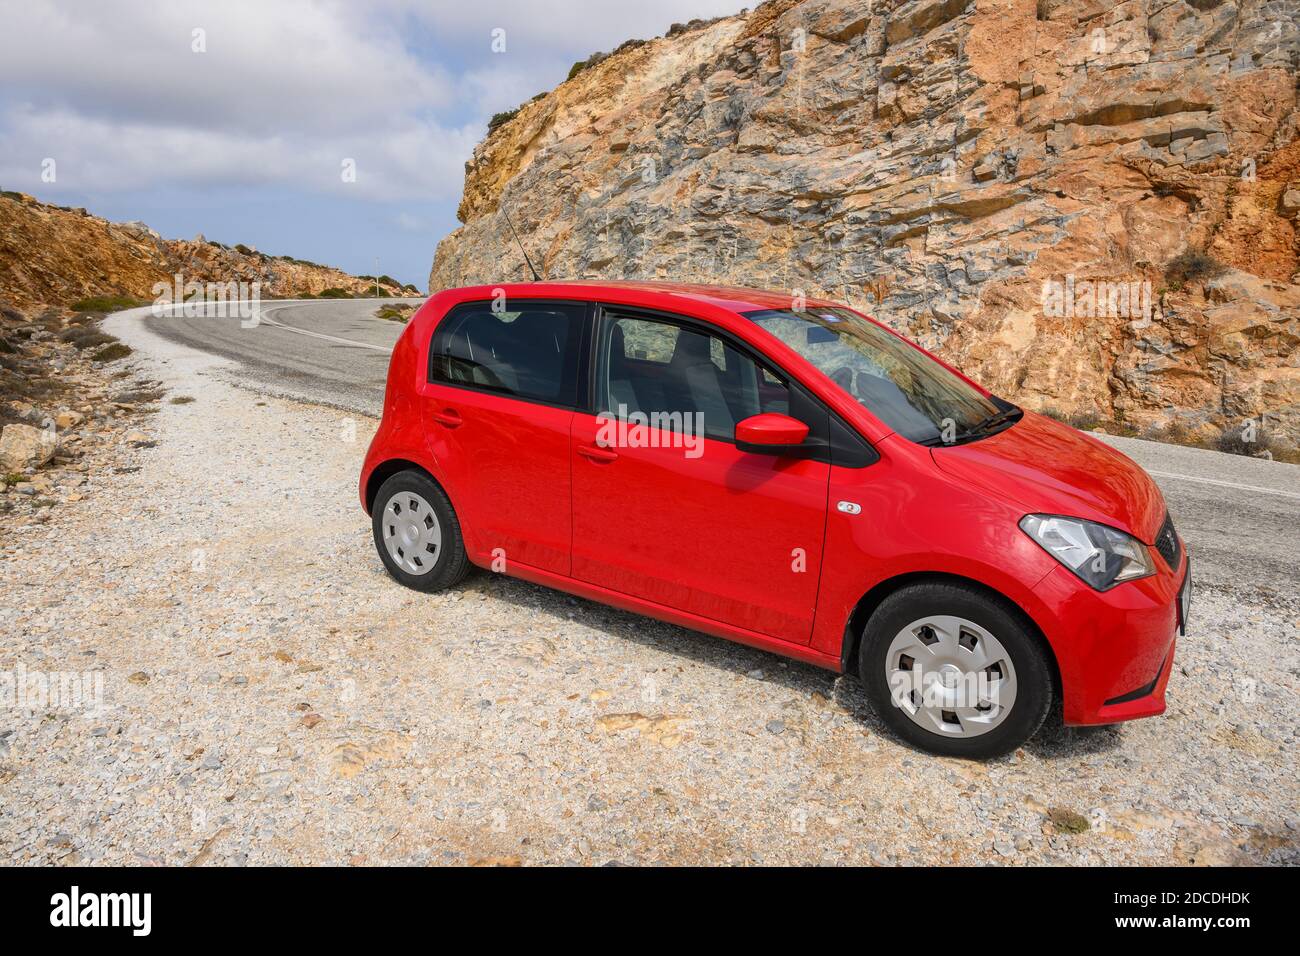 IOS, Grèce - 20 septembre 2020 : Red Seat Mii sur la route dans la partie montagneuse de l'île d'iOS. Cyclades, Grèce Banque D'Images